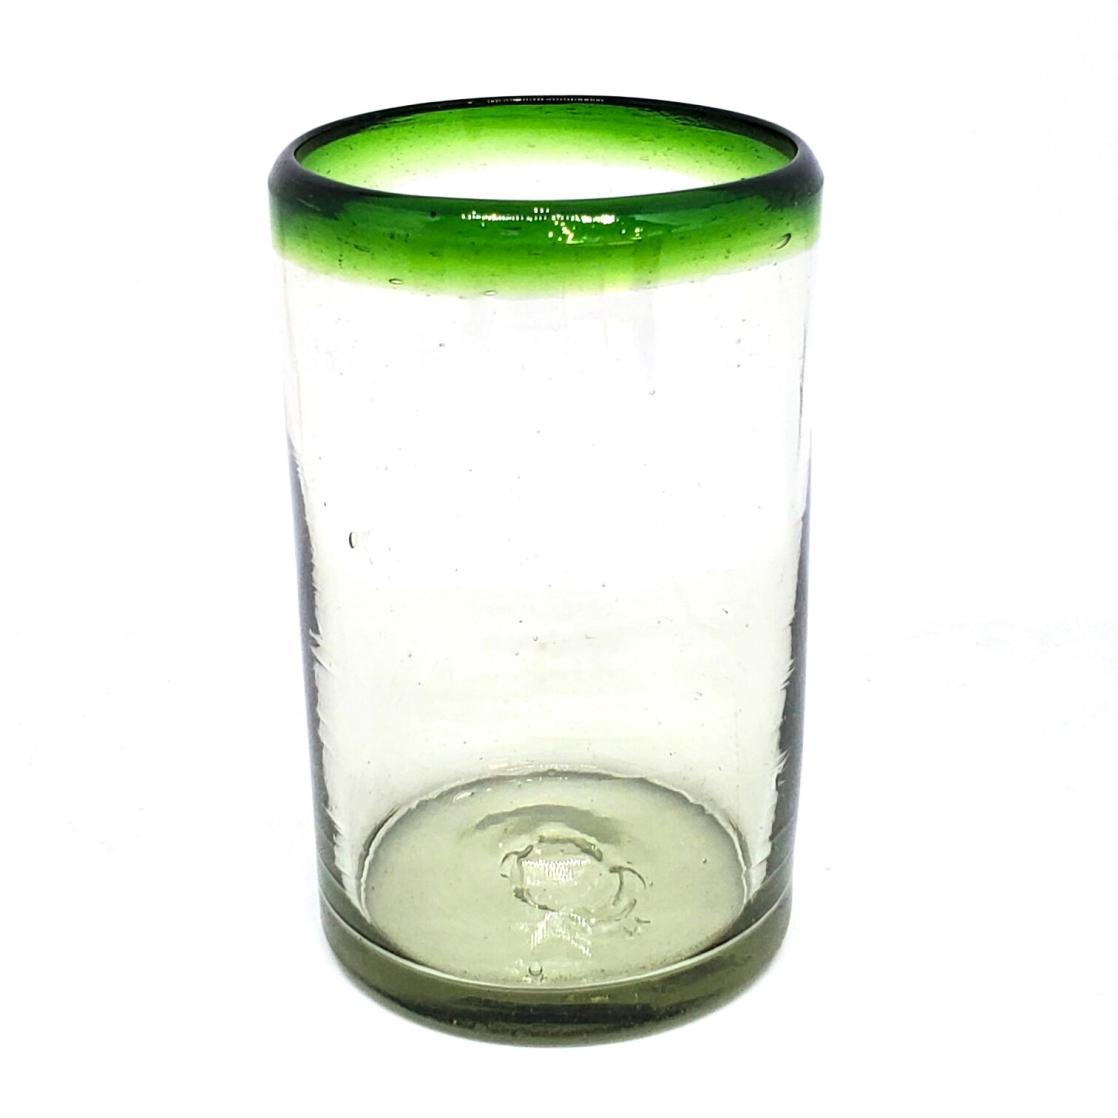 Ofertas / vasos grandes con borde verde esmeralda, 14 oz, Vidrio Reciclado, Libre de Plomo y Toxinas / stos artesanales vasos le darn un toque clsico a su bebida favorita.